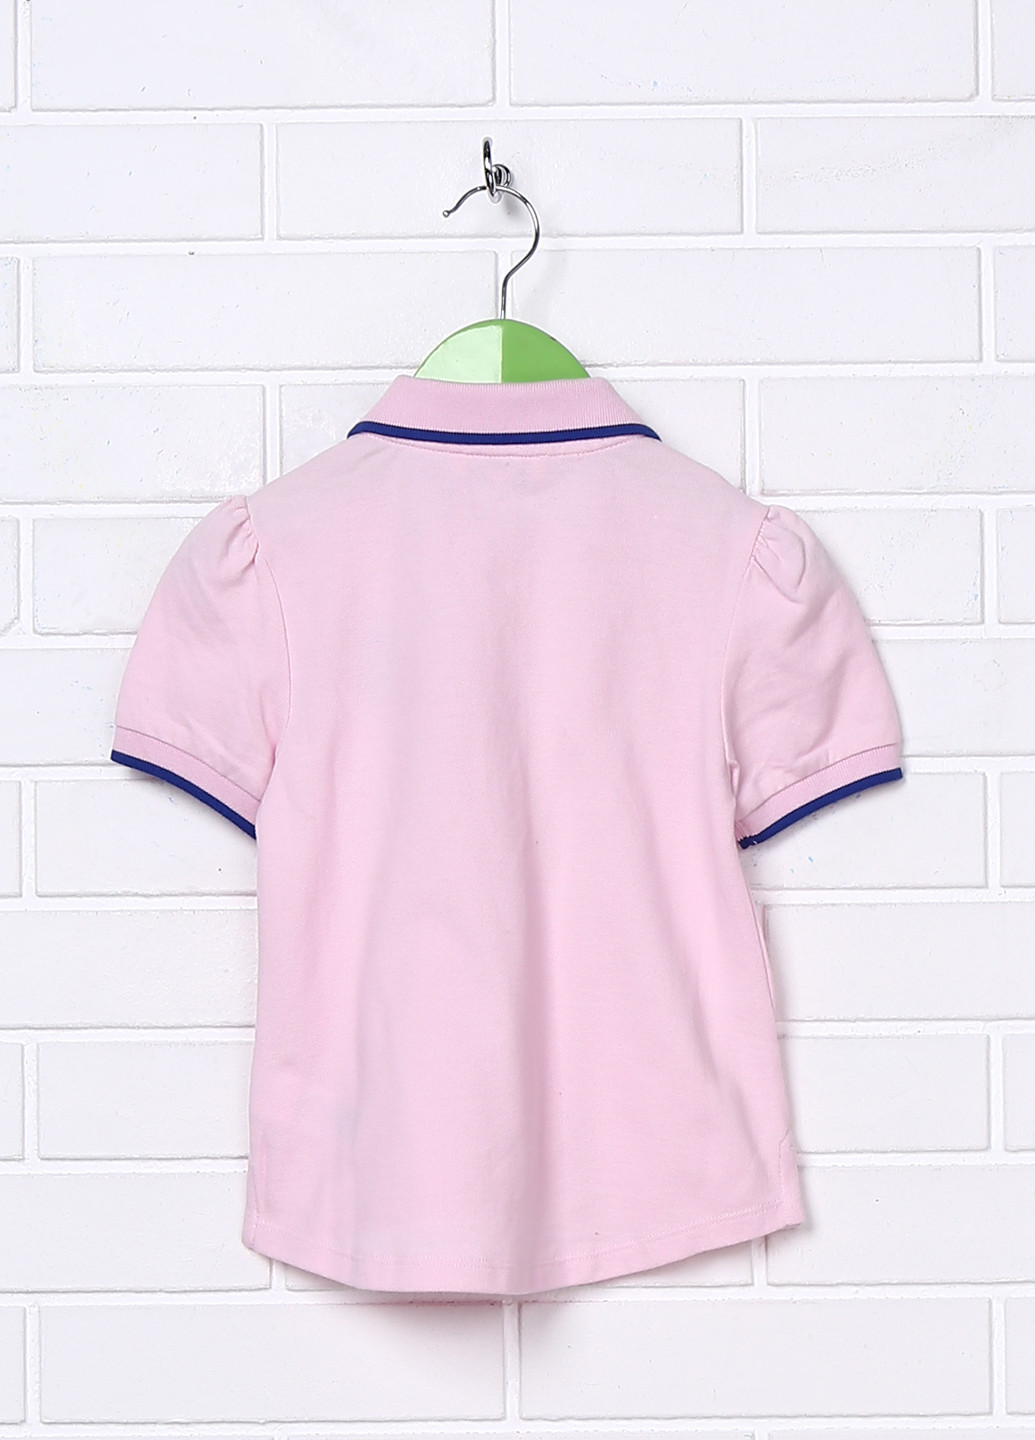 Бледно-розовая детская футболка-поло для девочки Juicy Couture с надписью